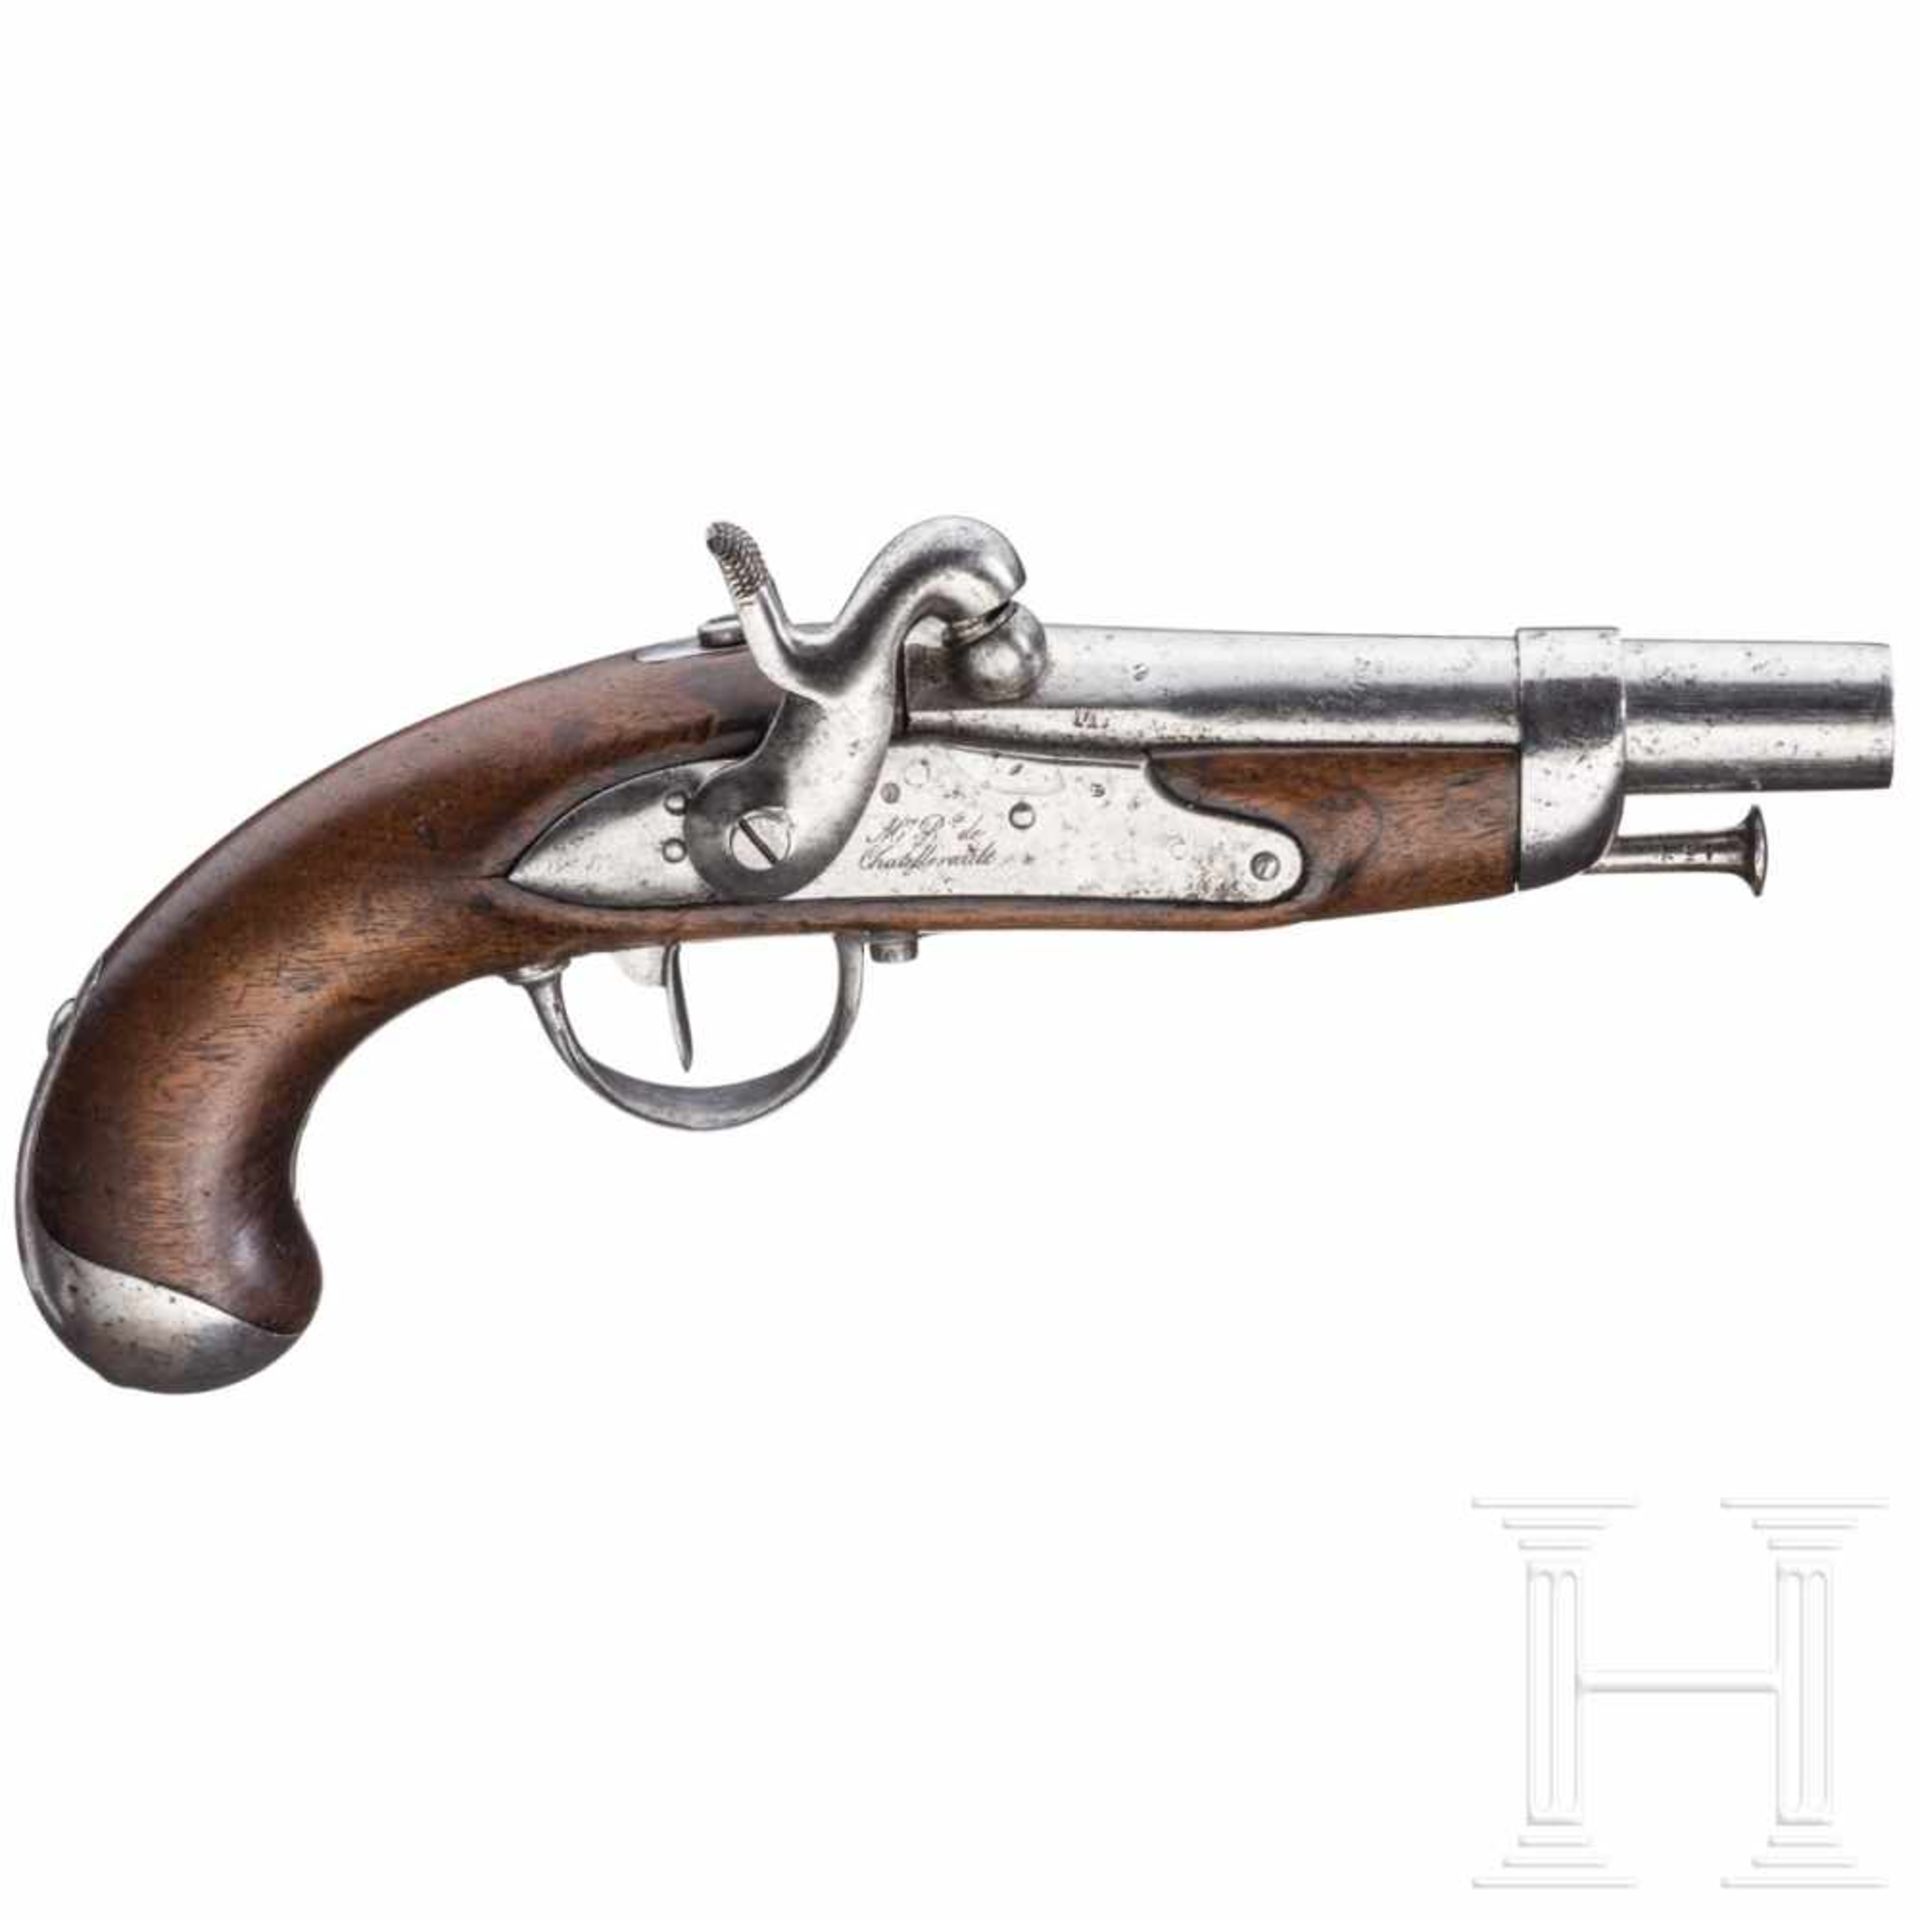 A pistol M 1822 T for gendarmsGlatter Lauf im Kaliber 15,5 mm, über der Kammer mehrfach gestempelt